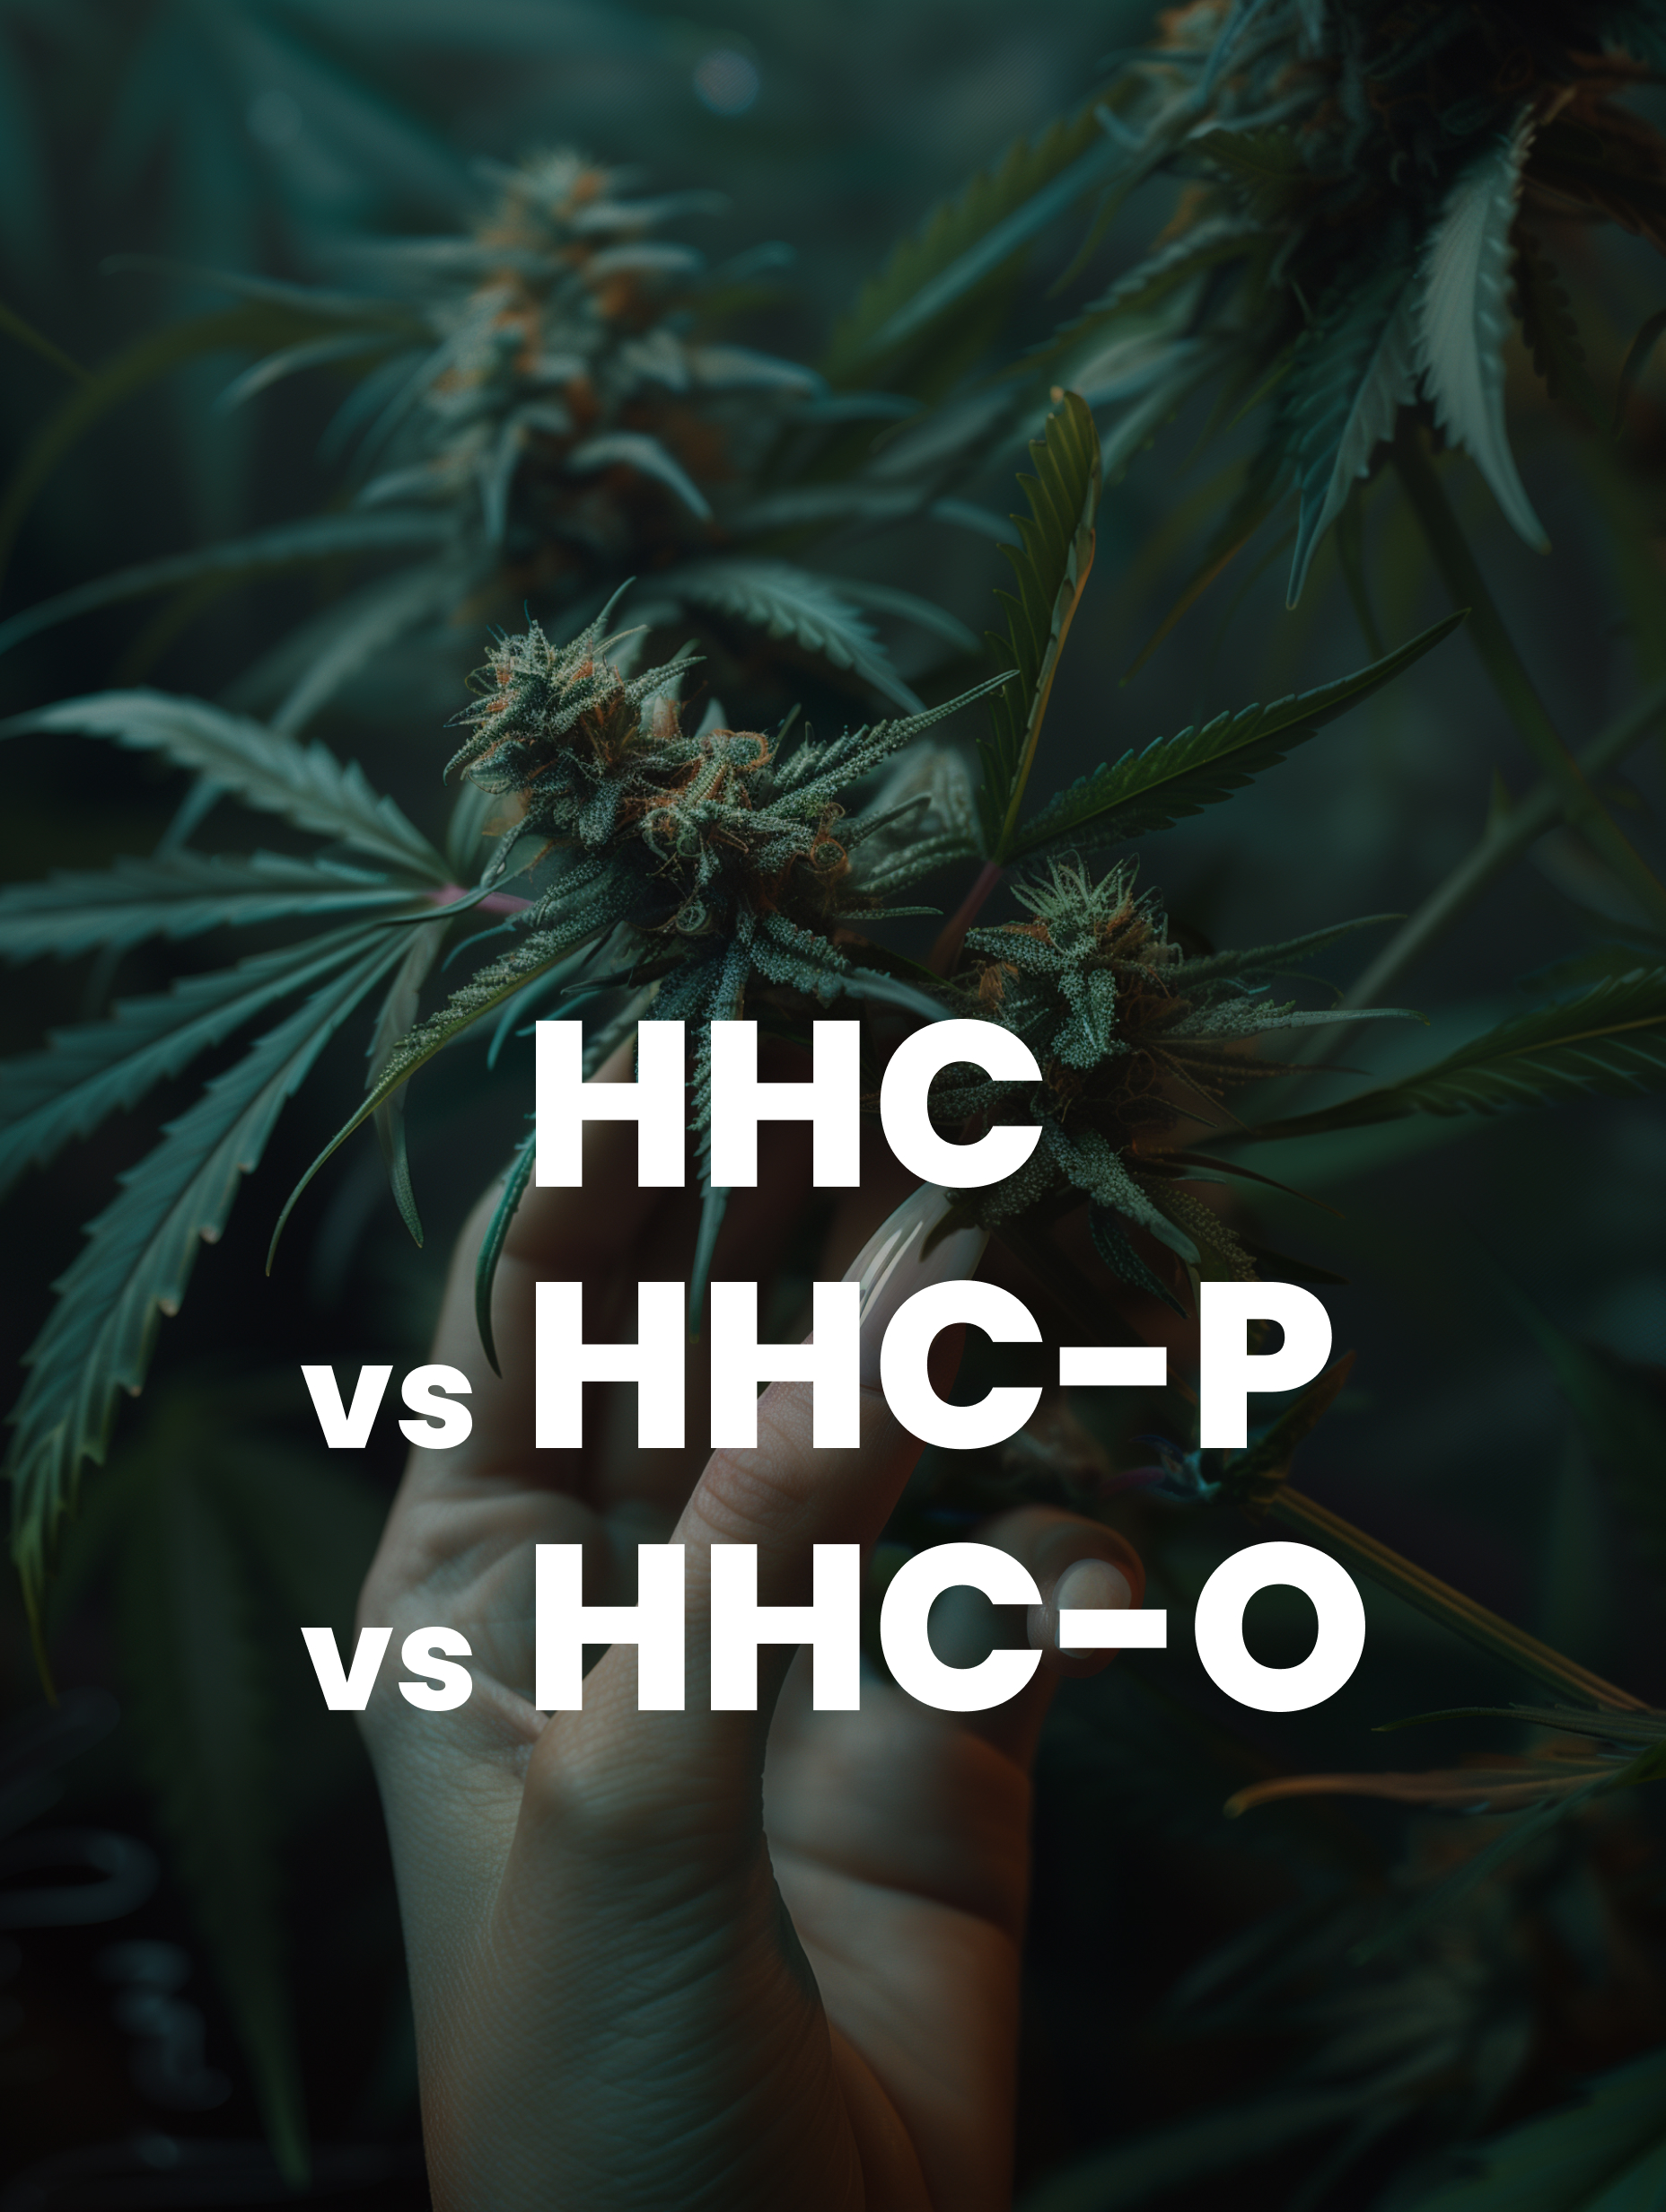 HHC vs HHCP vs HHC-O